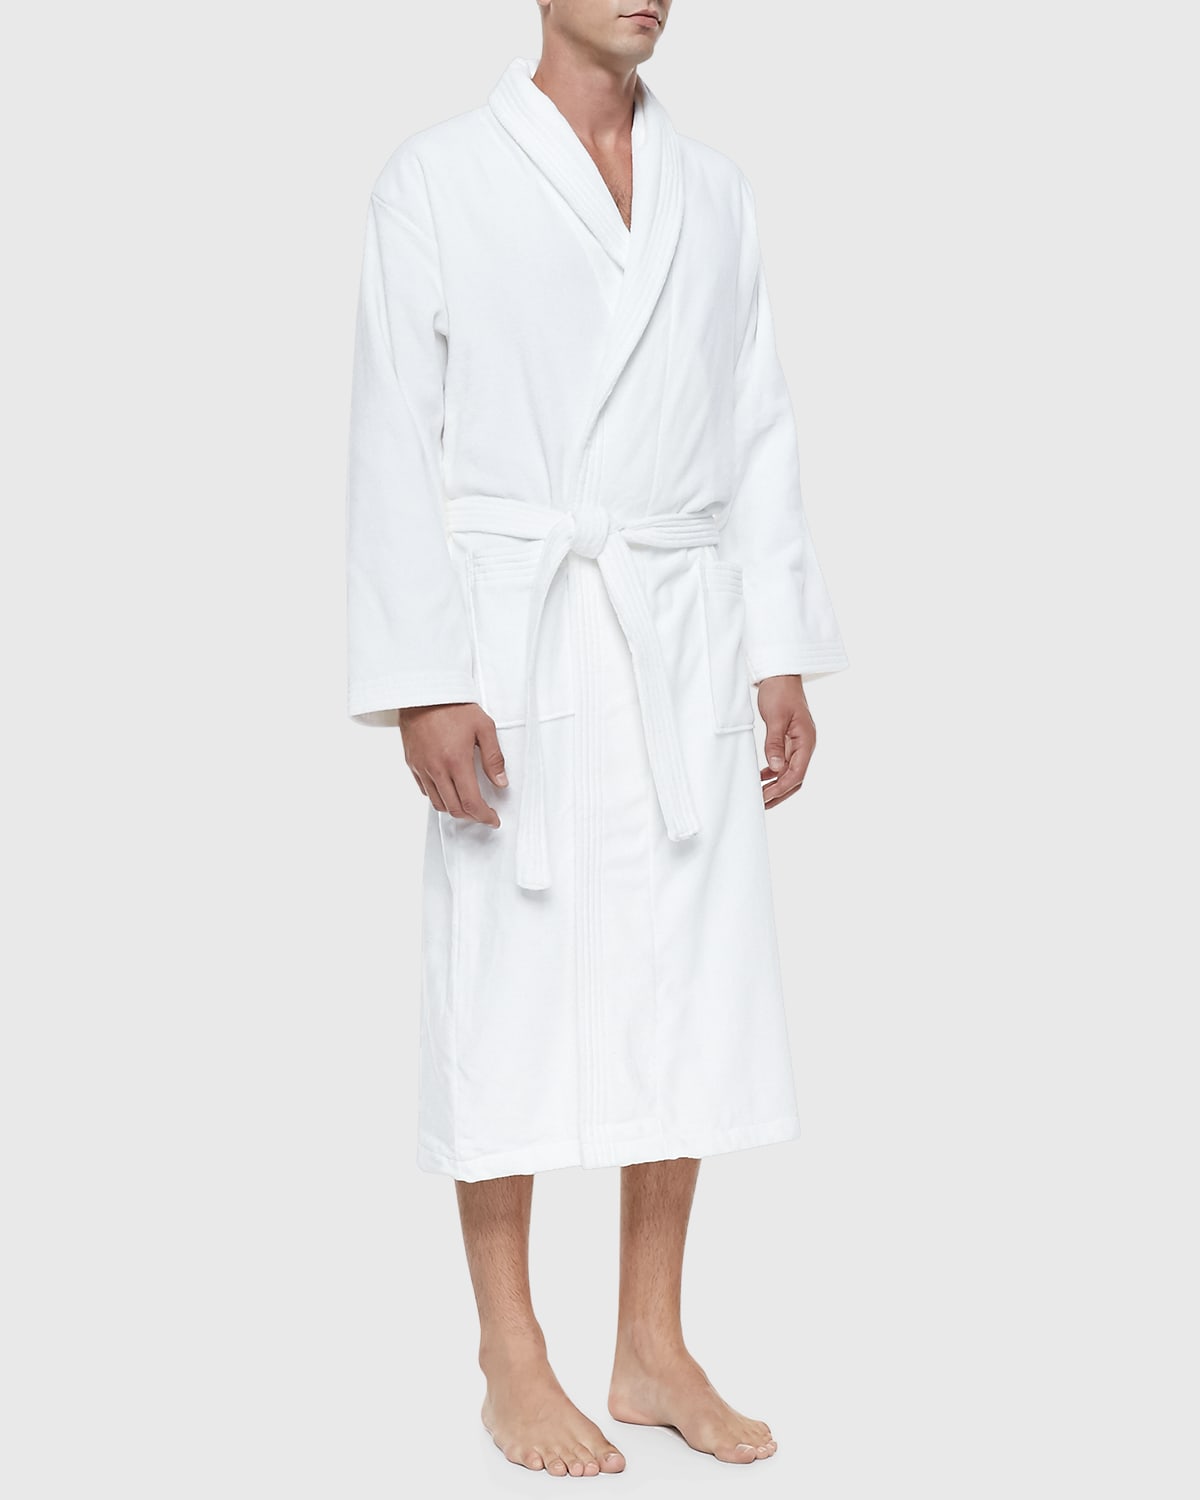 Terry Cloth Robe, White